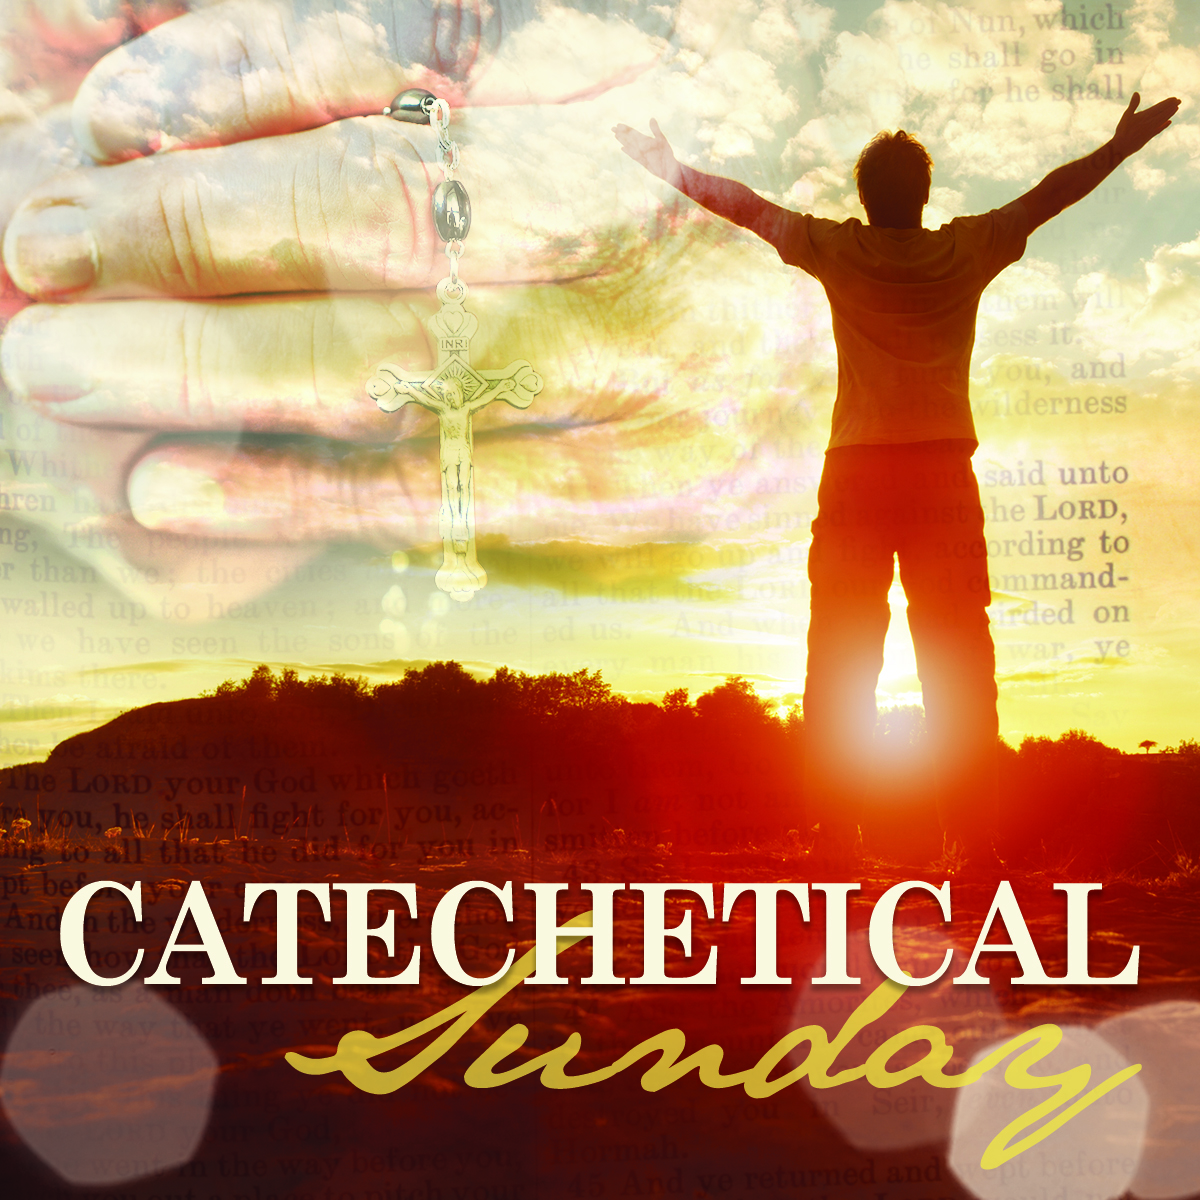 Catechetical Sunday 2 Holy Spirit Fremont